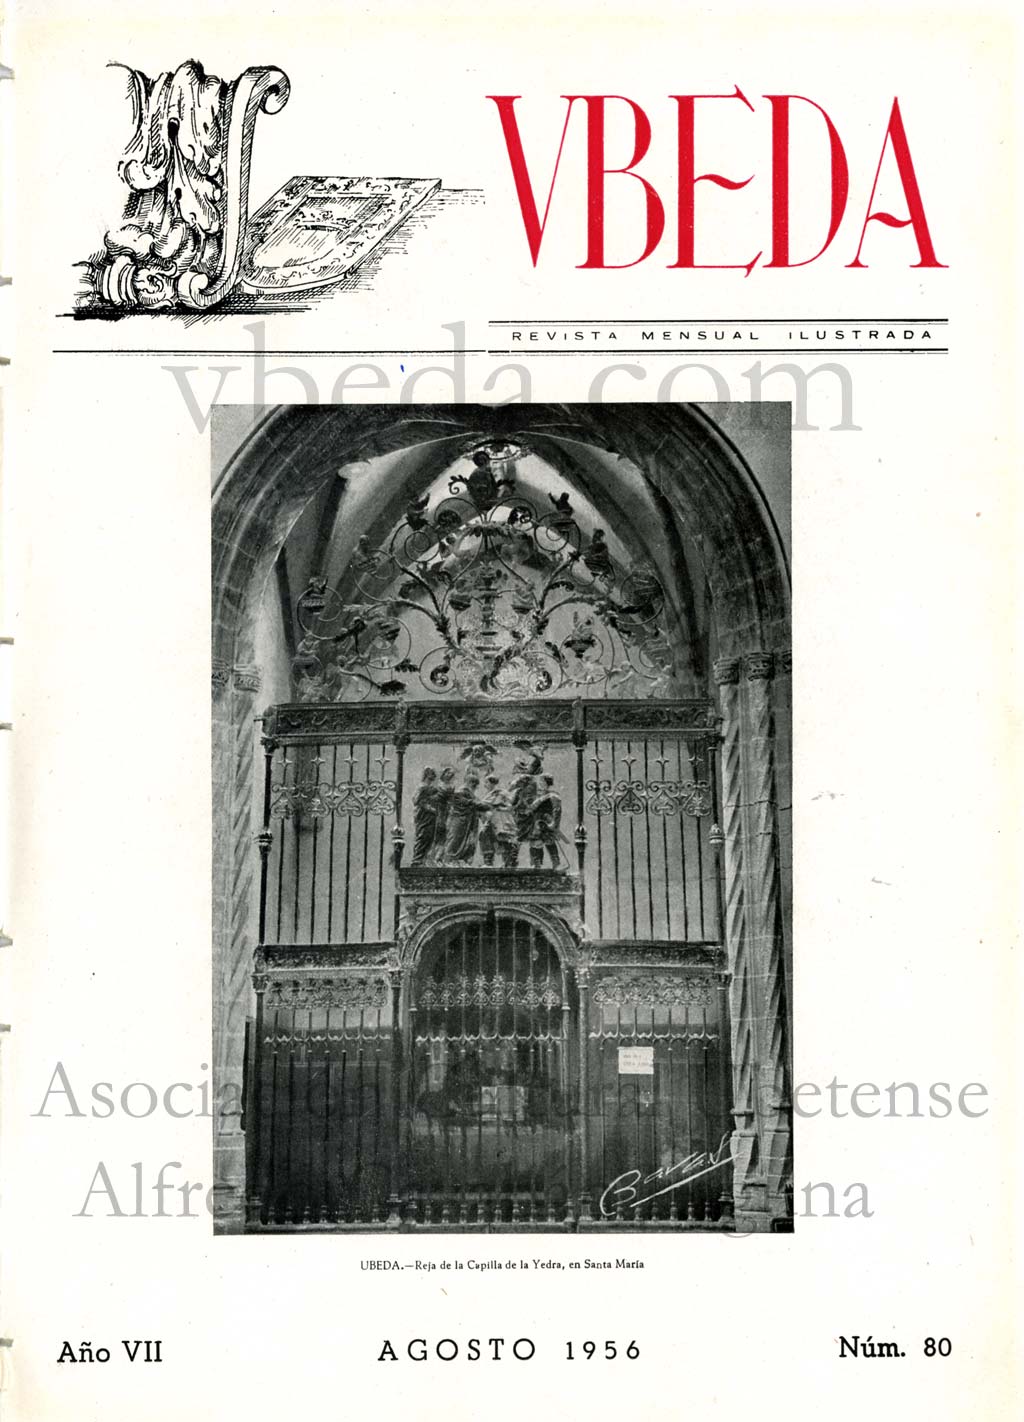 Revista Vbeda. Ao 7. N 80 de agosto de 1956